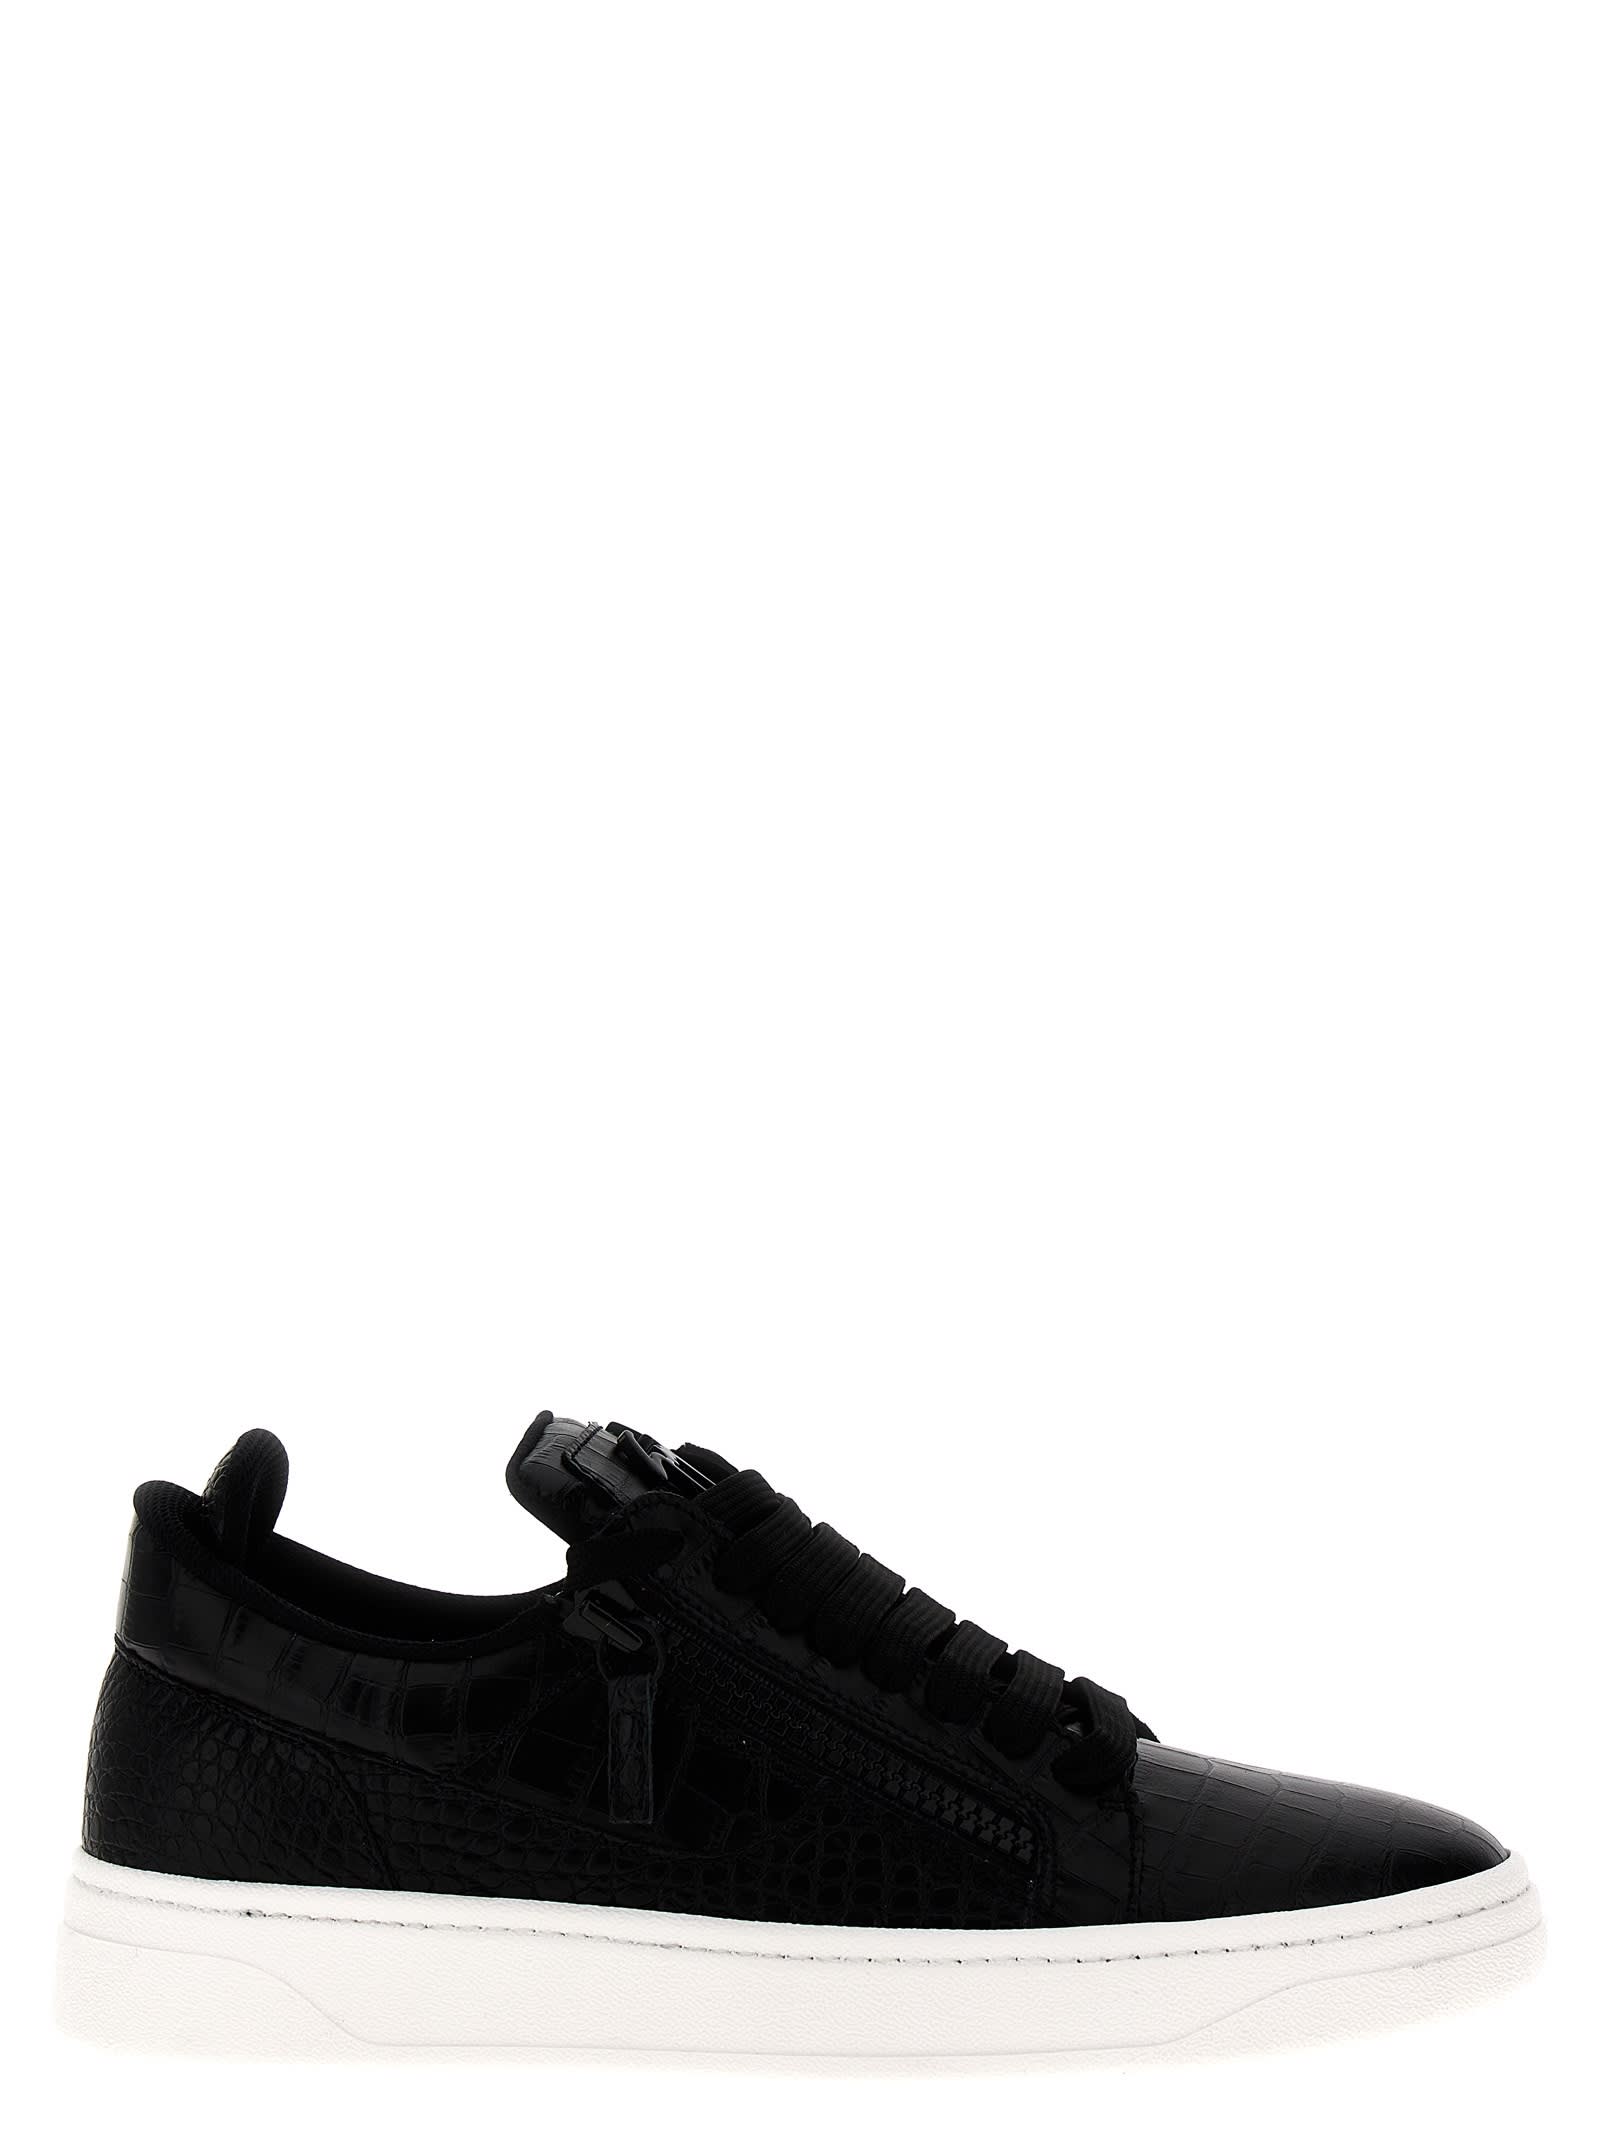 Shop Giuseppe Zanotti Gz94 Sneakers In White/black